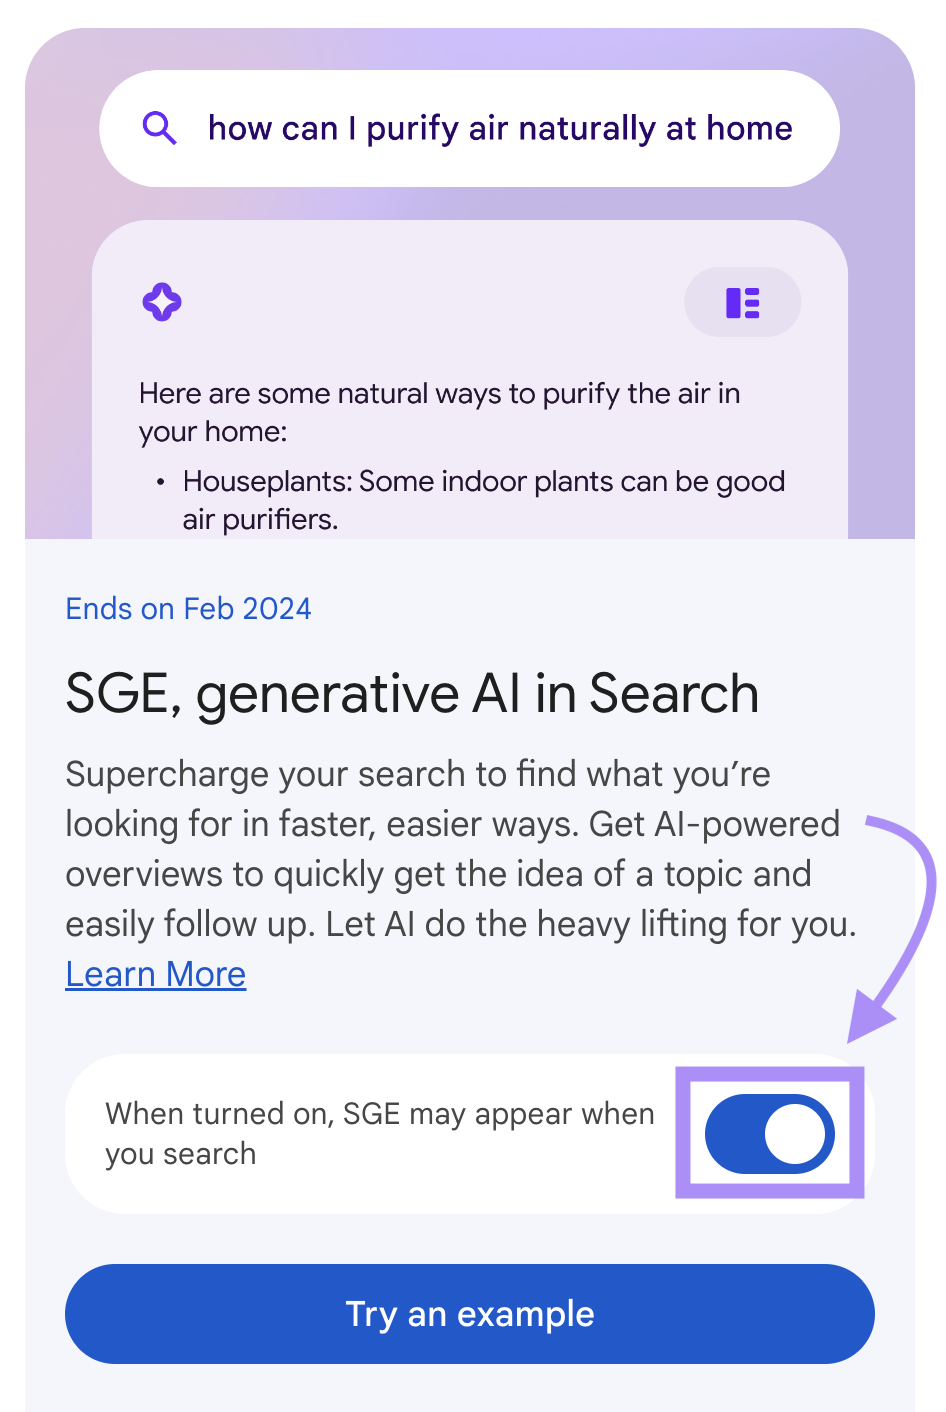 “SGE, generative AI in Search” card